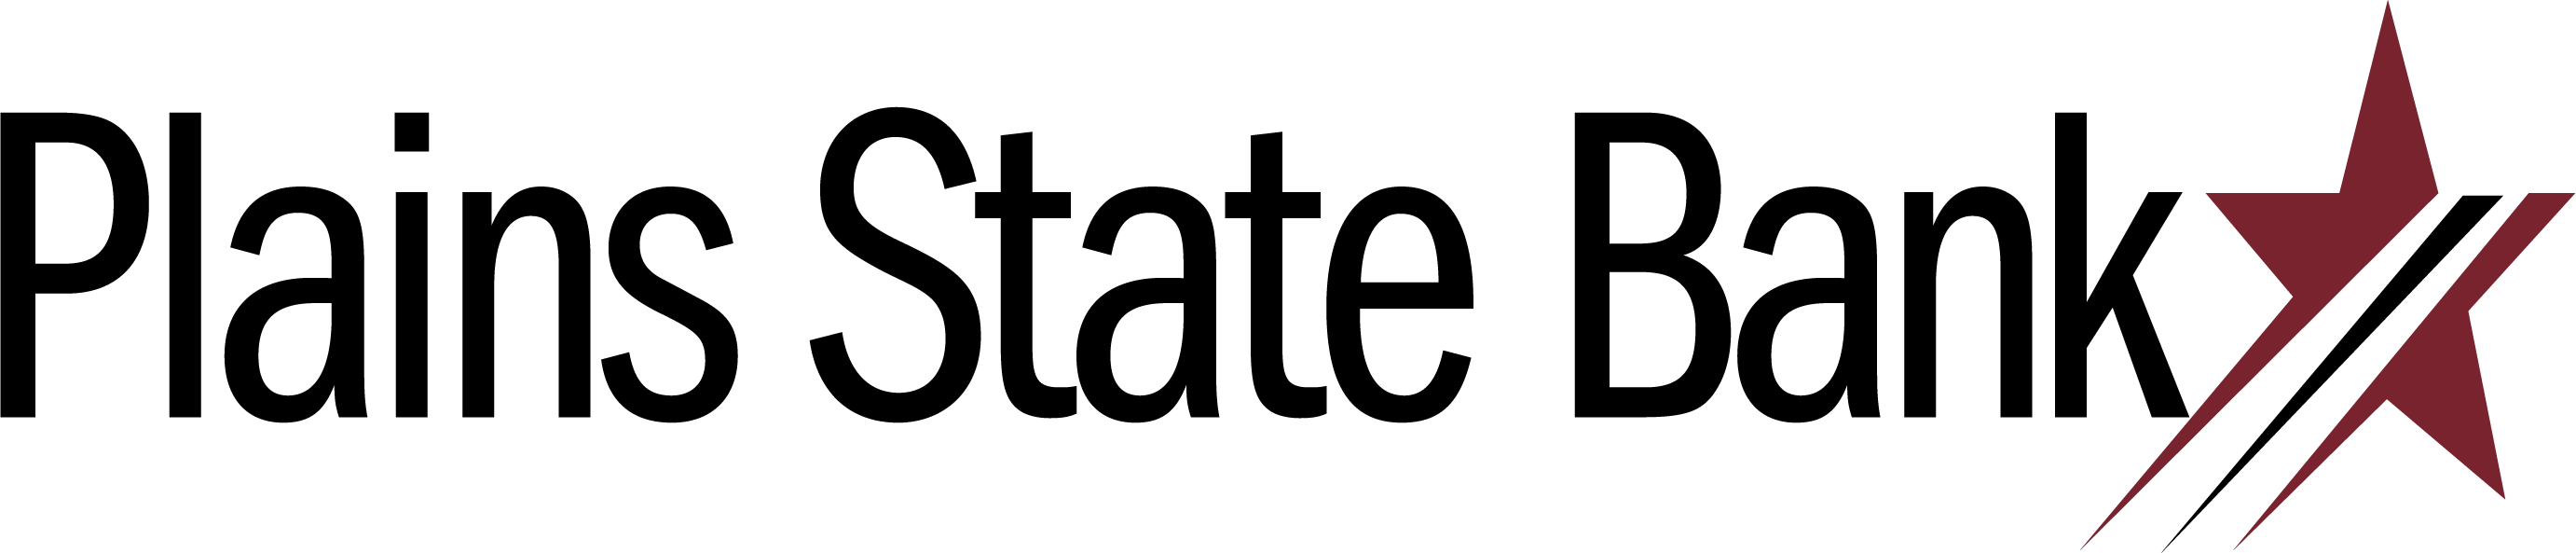 Plains-State-Bank-logo